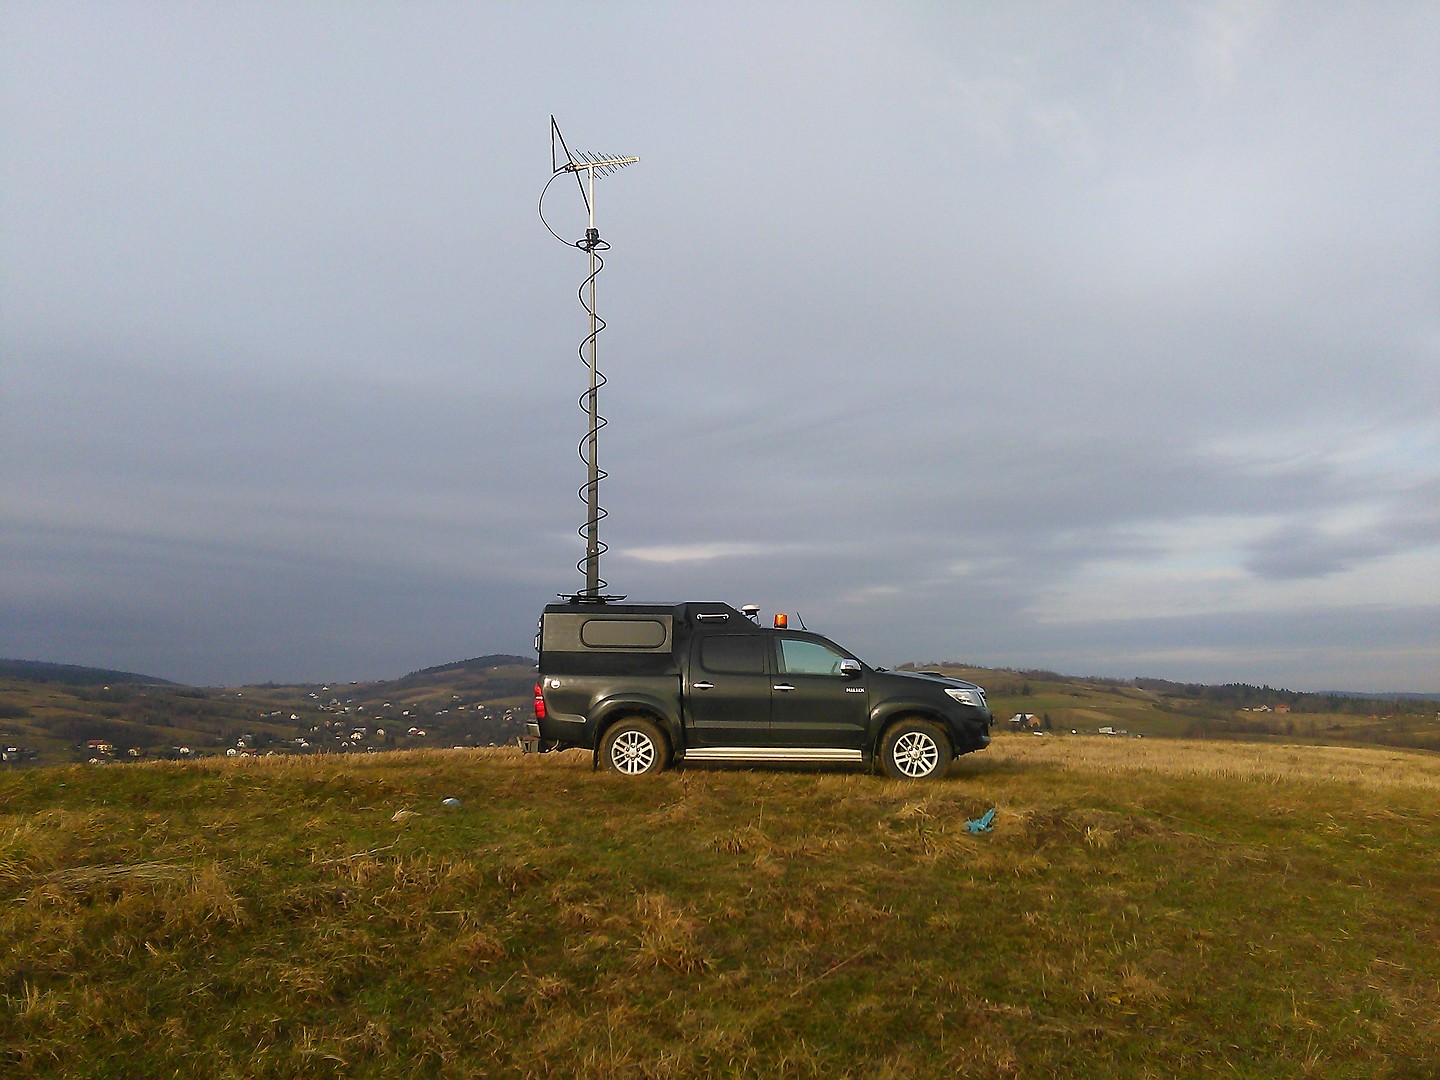 Stacja pomiarowa na bazie samochodu Toyota Hilux z zamontowaną na dachu anteną pomiarową